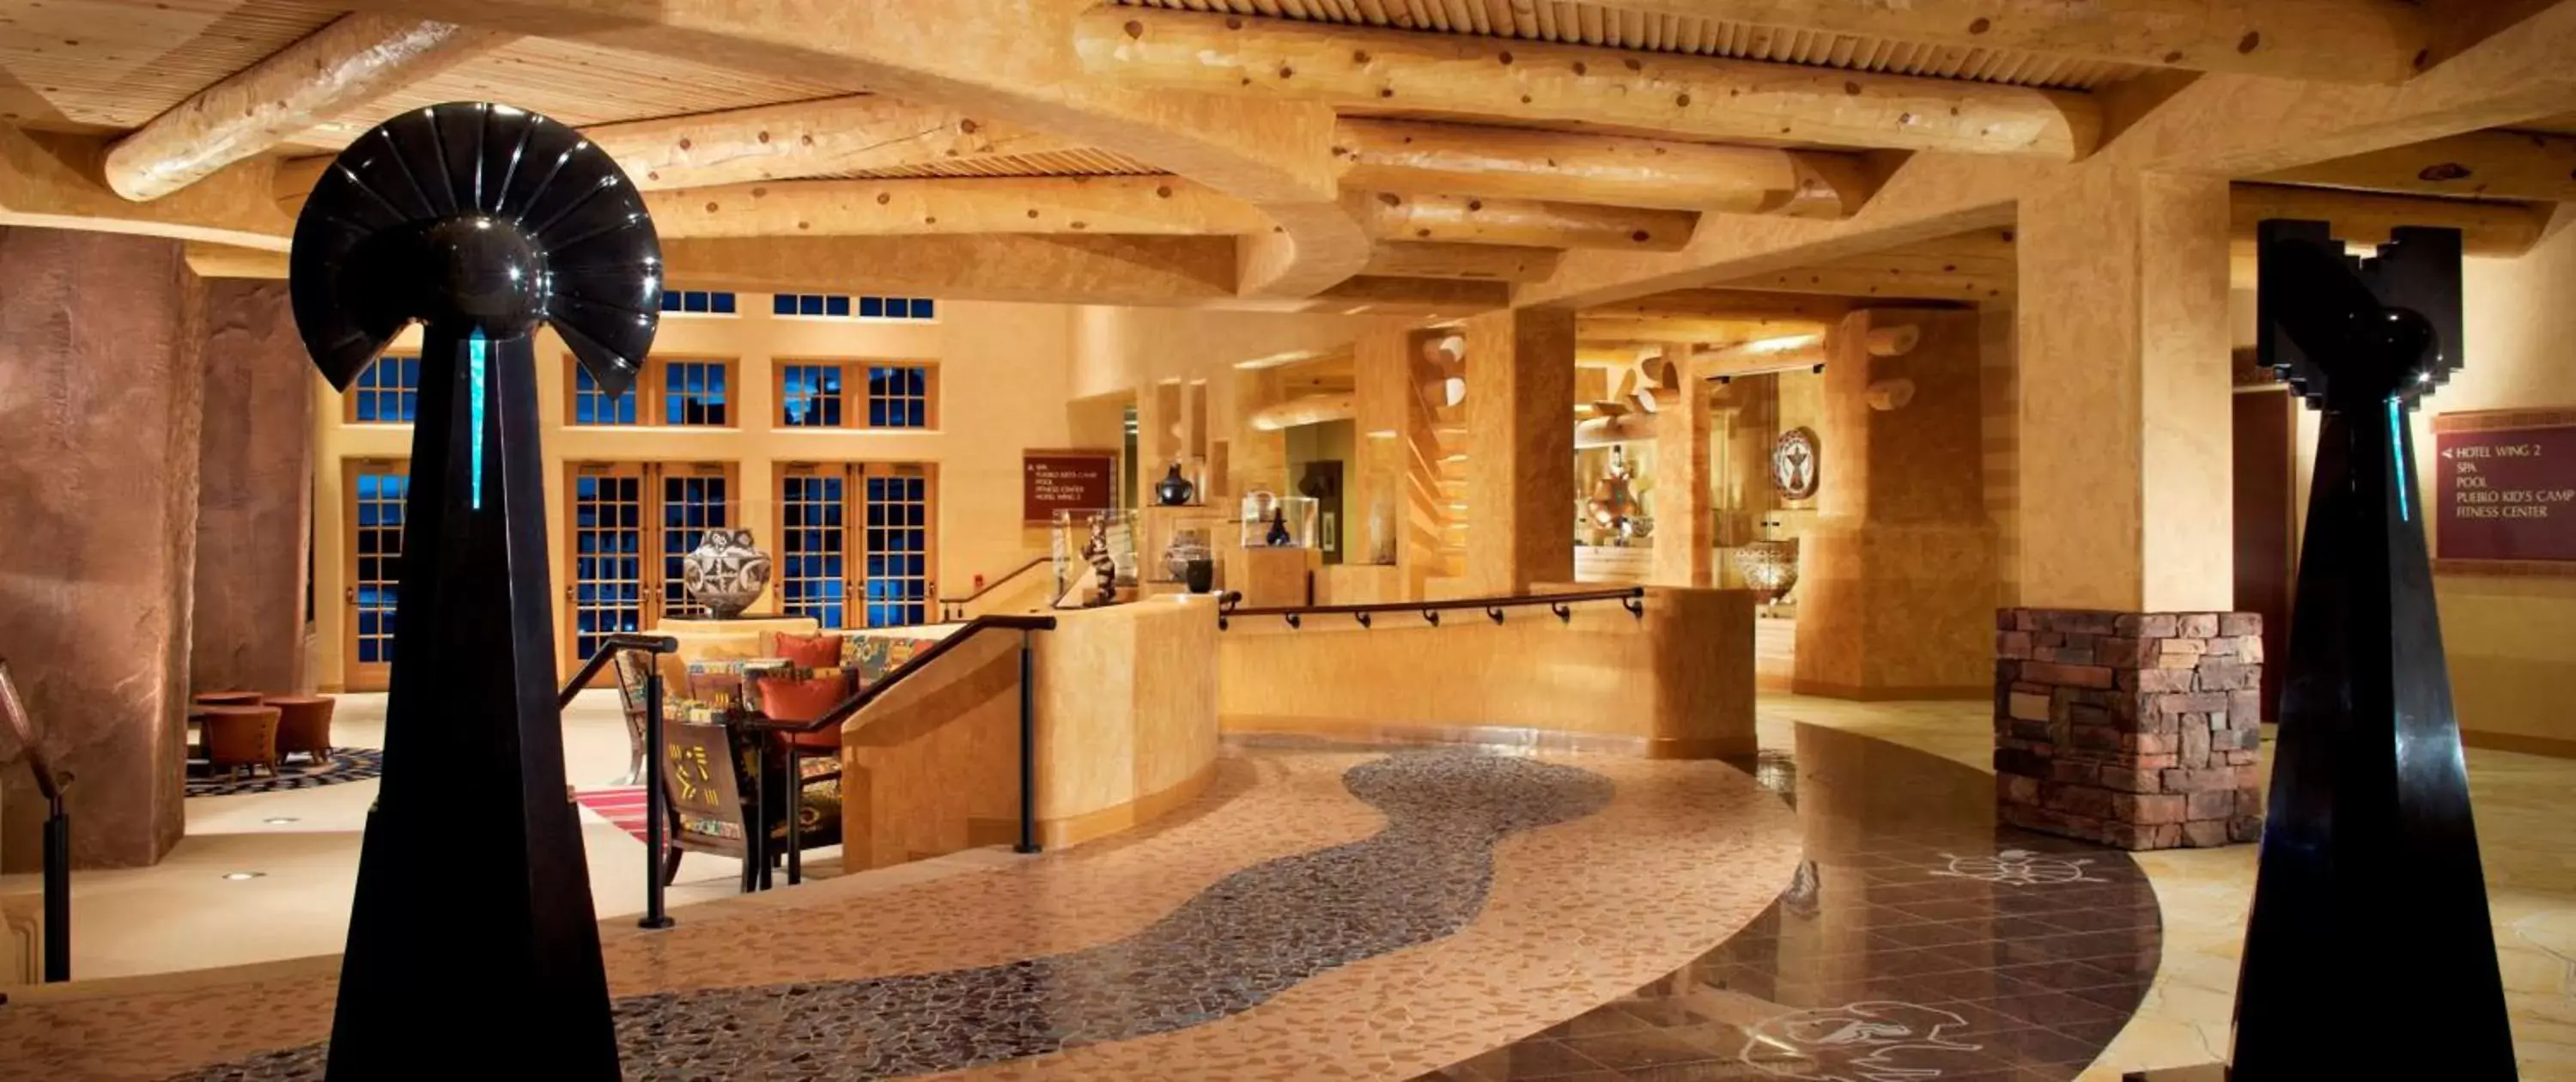 Lobby or reception, Lobby/Reception in Hilton Santa Fe Buffalo Thunder